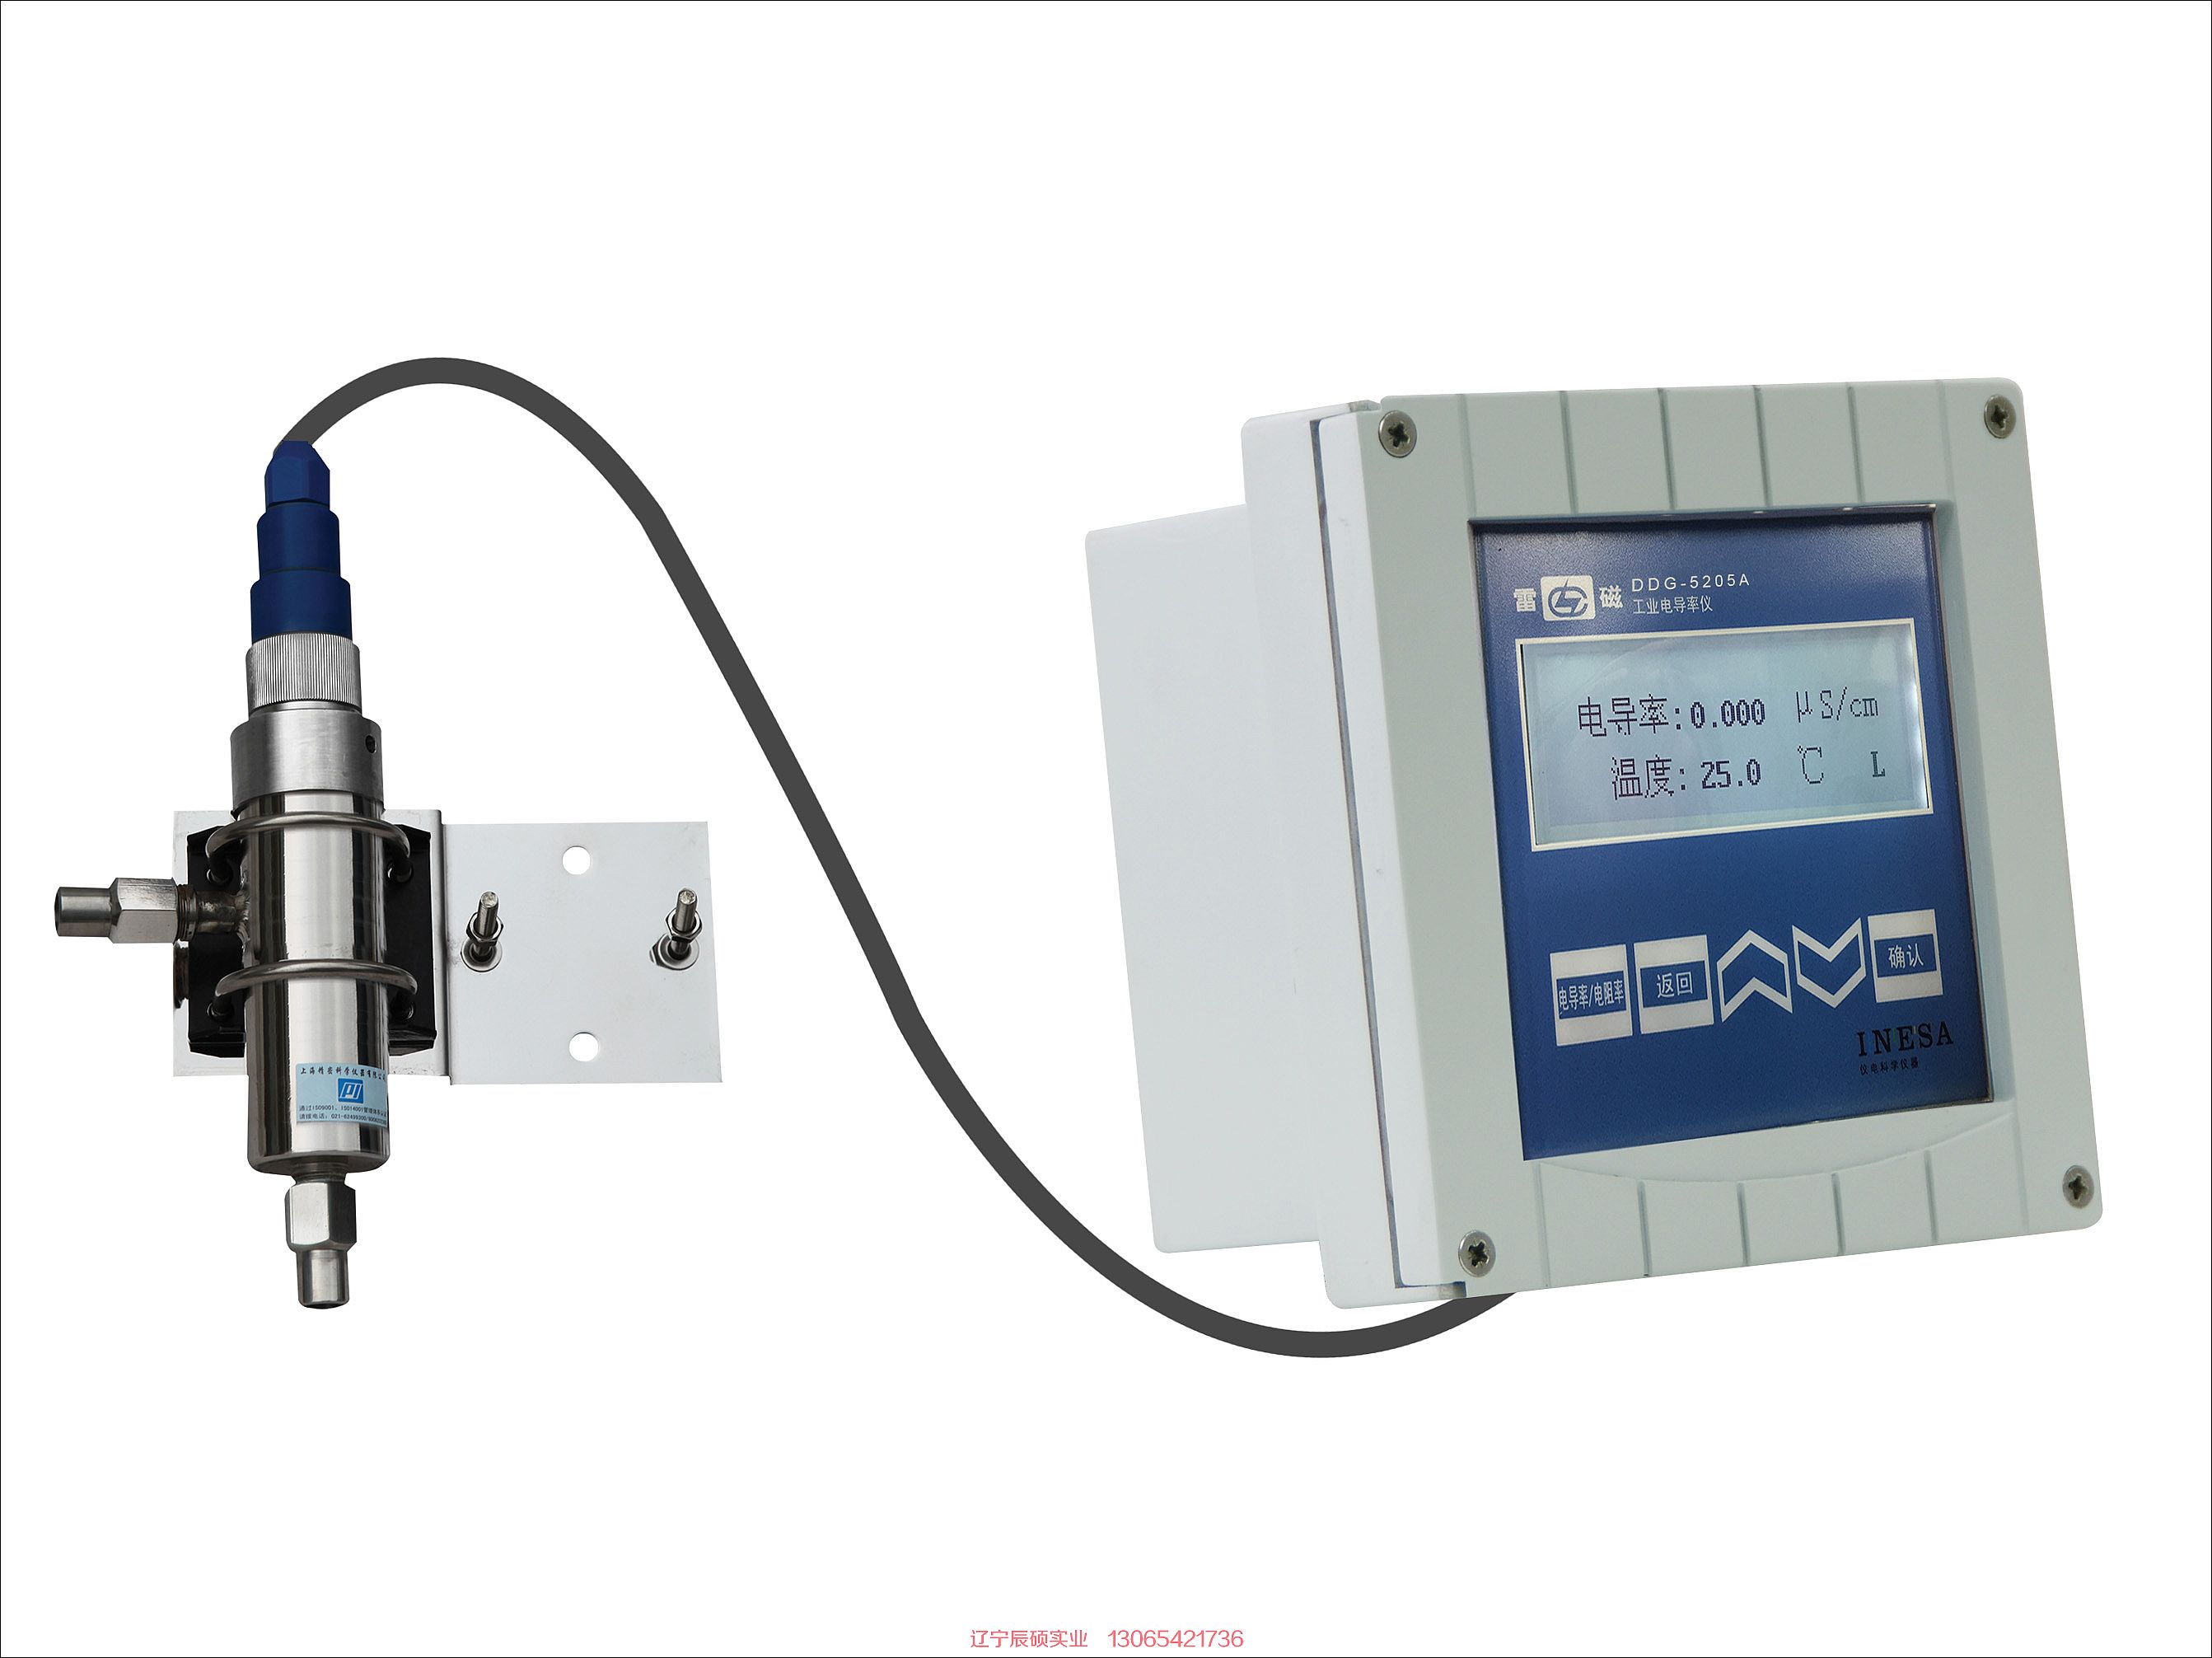 雷磁在线电导率监测仪DDG-5205A型工业电导率仪